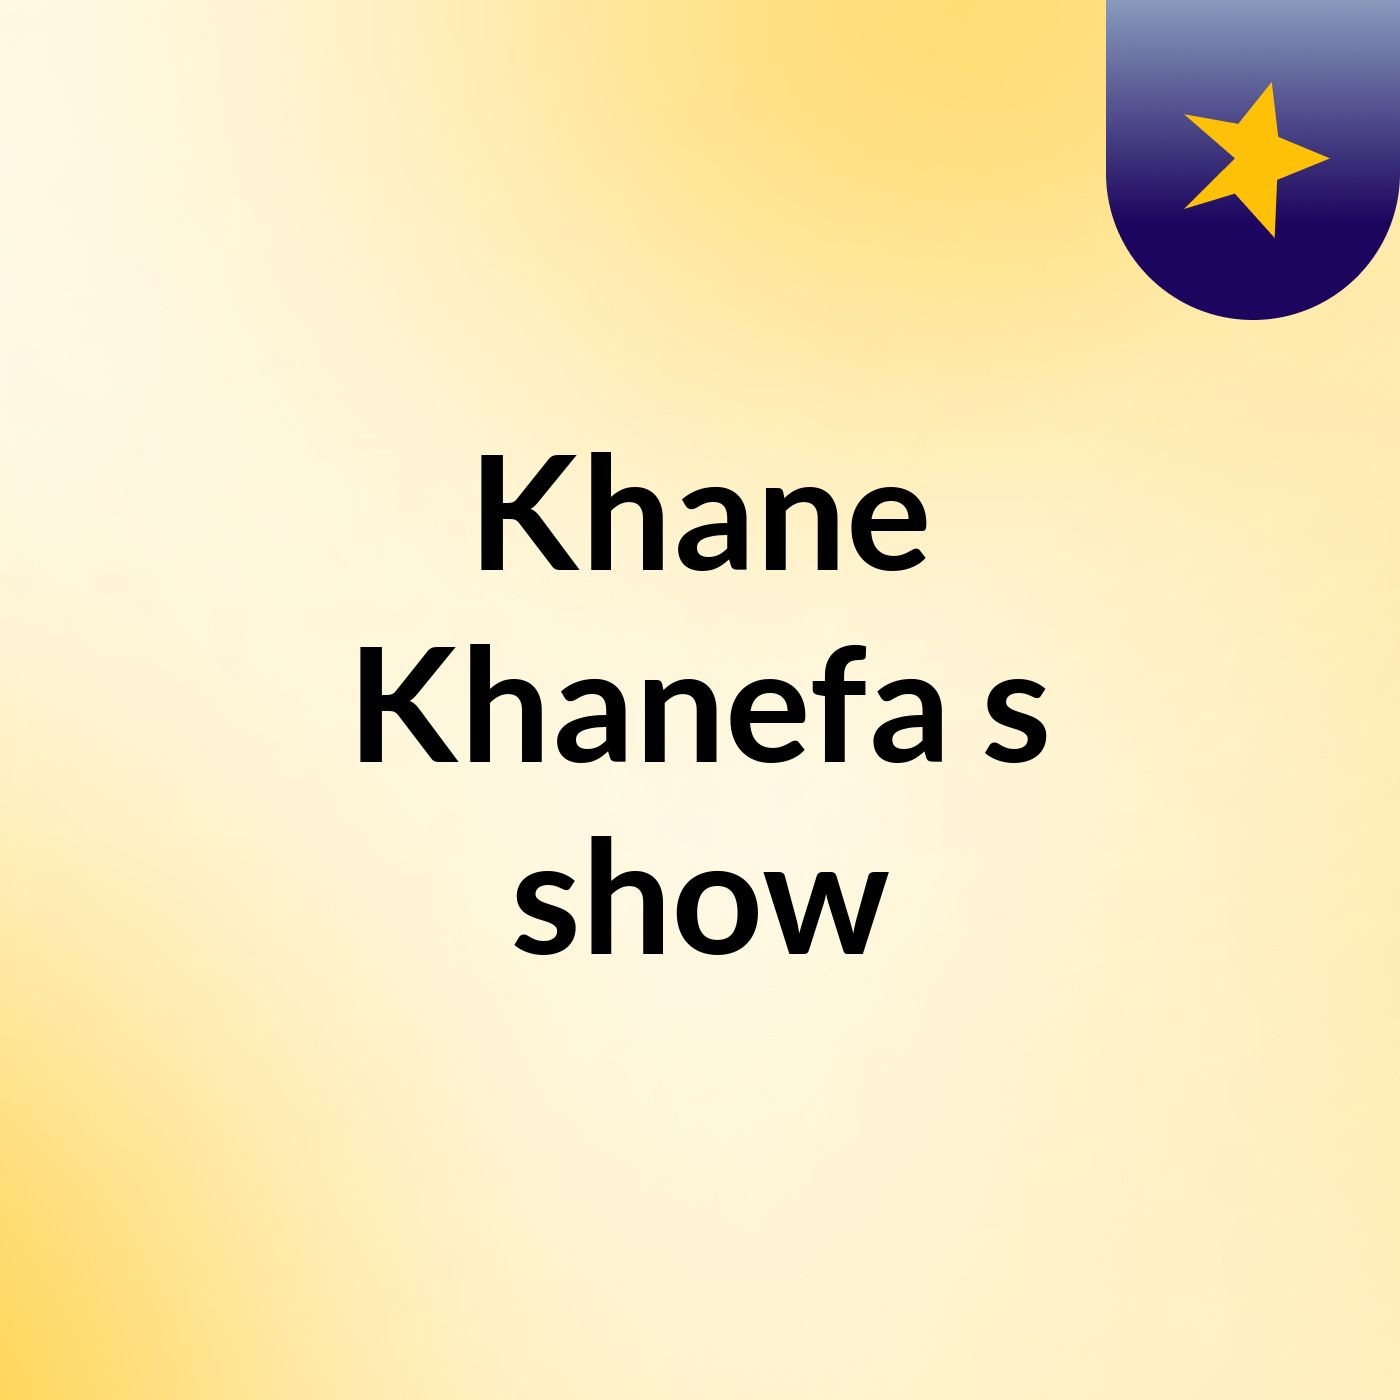 Khane Khanefa's show